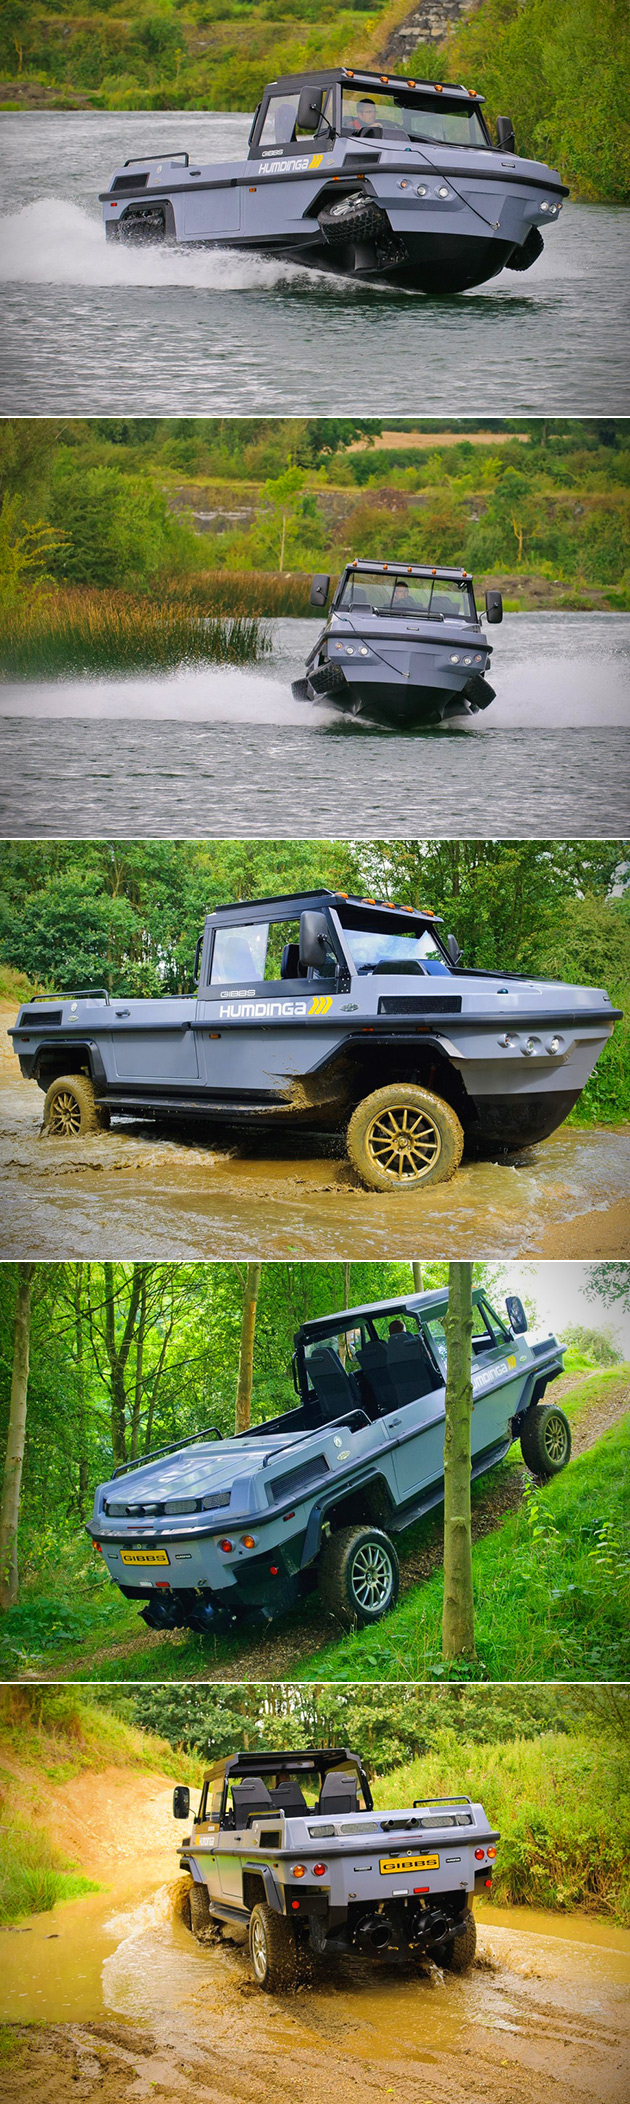 humdinga-amphibious-vehicle